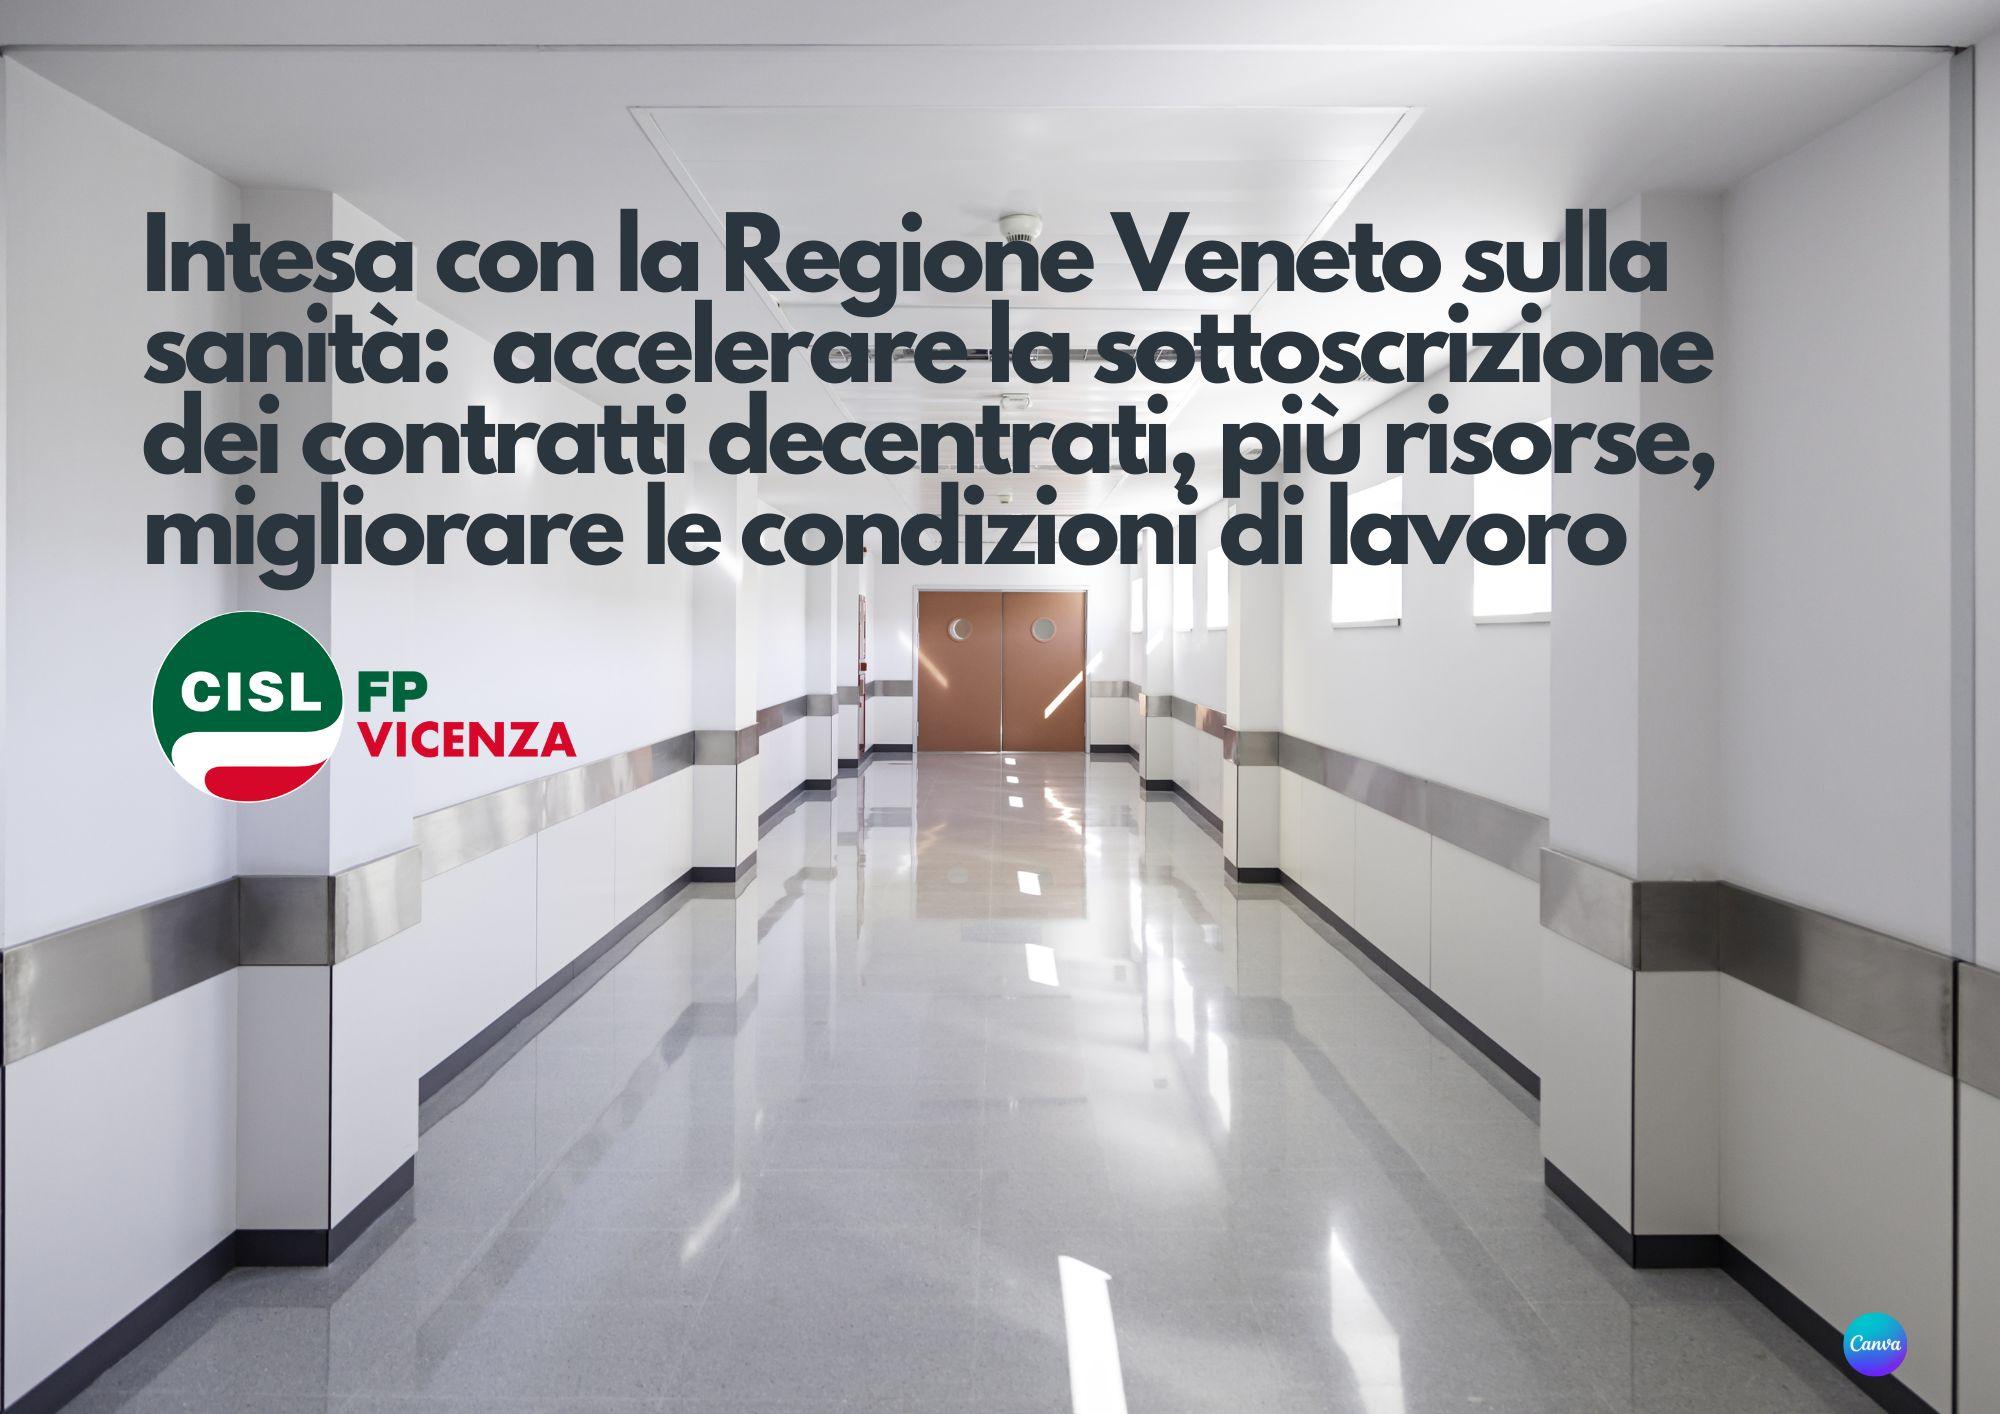 Cisl FP Vicenza. Sanità pubblica. Accordo con Regione Veneto: accelerare contrattazione decentrata e risorse